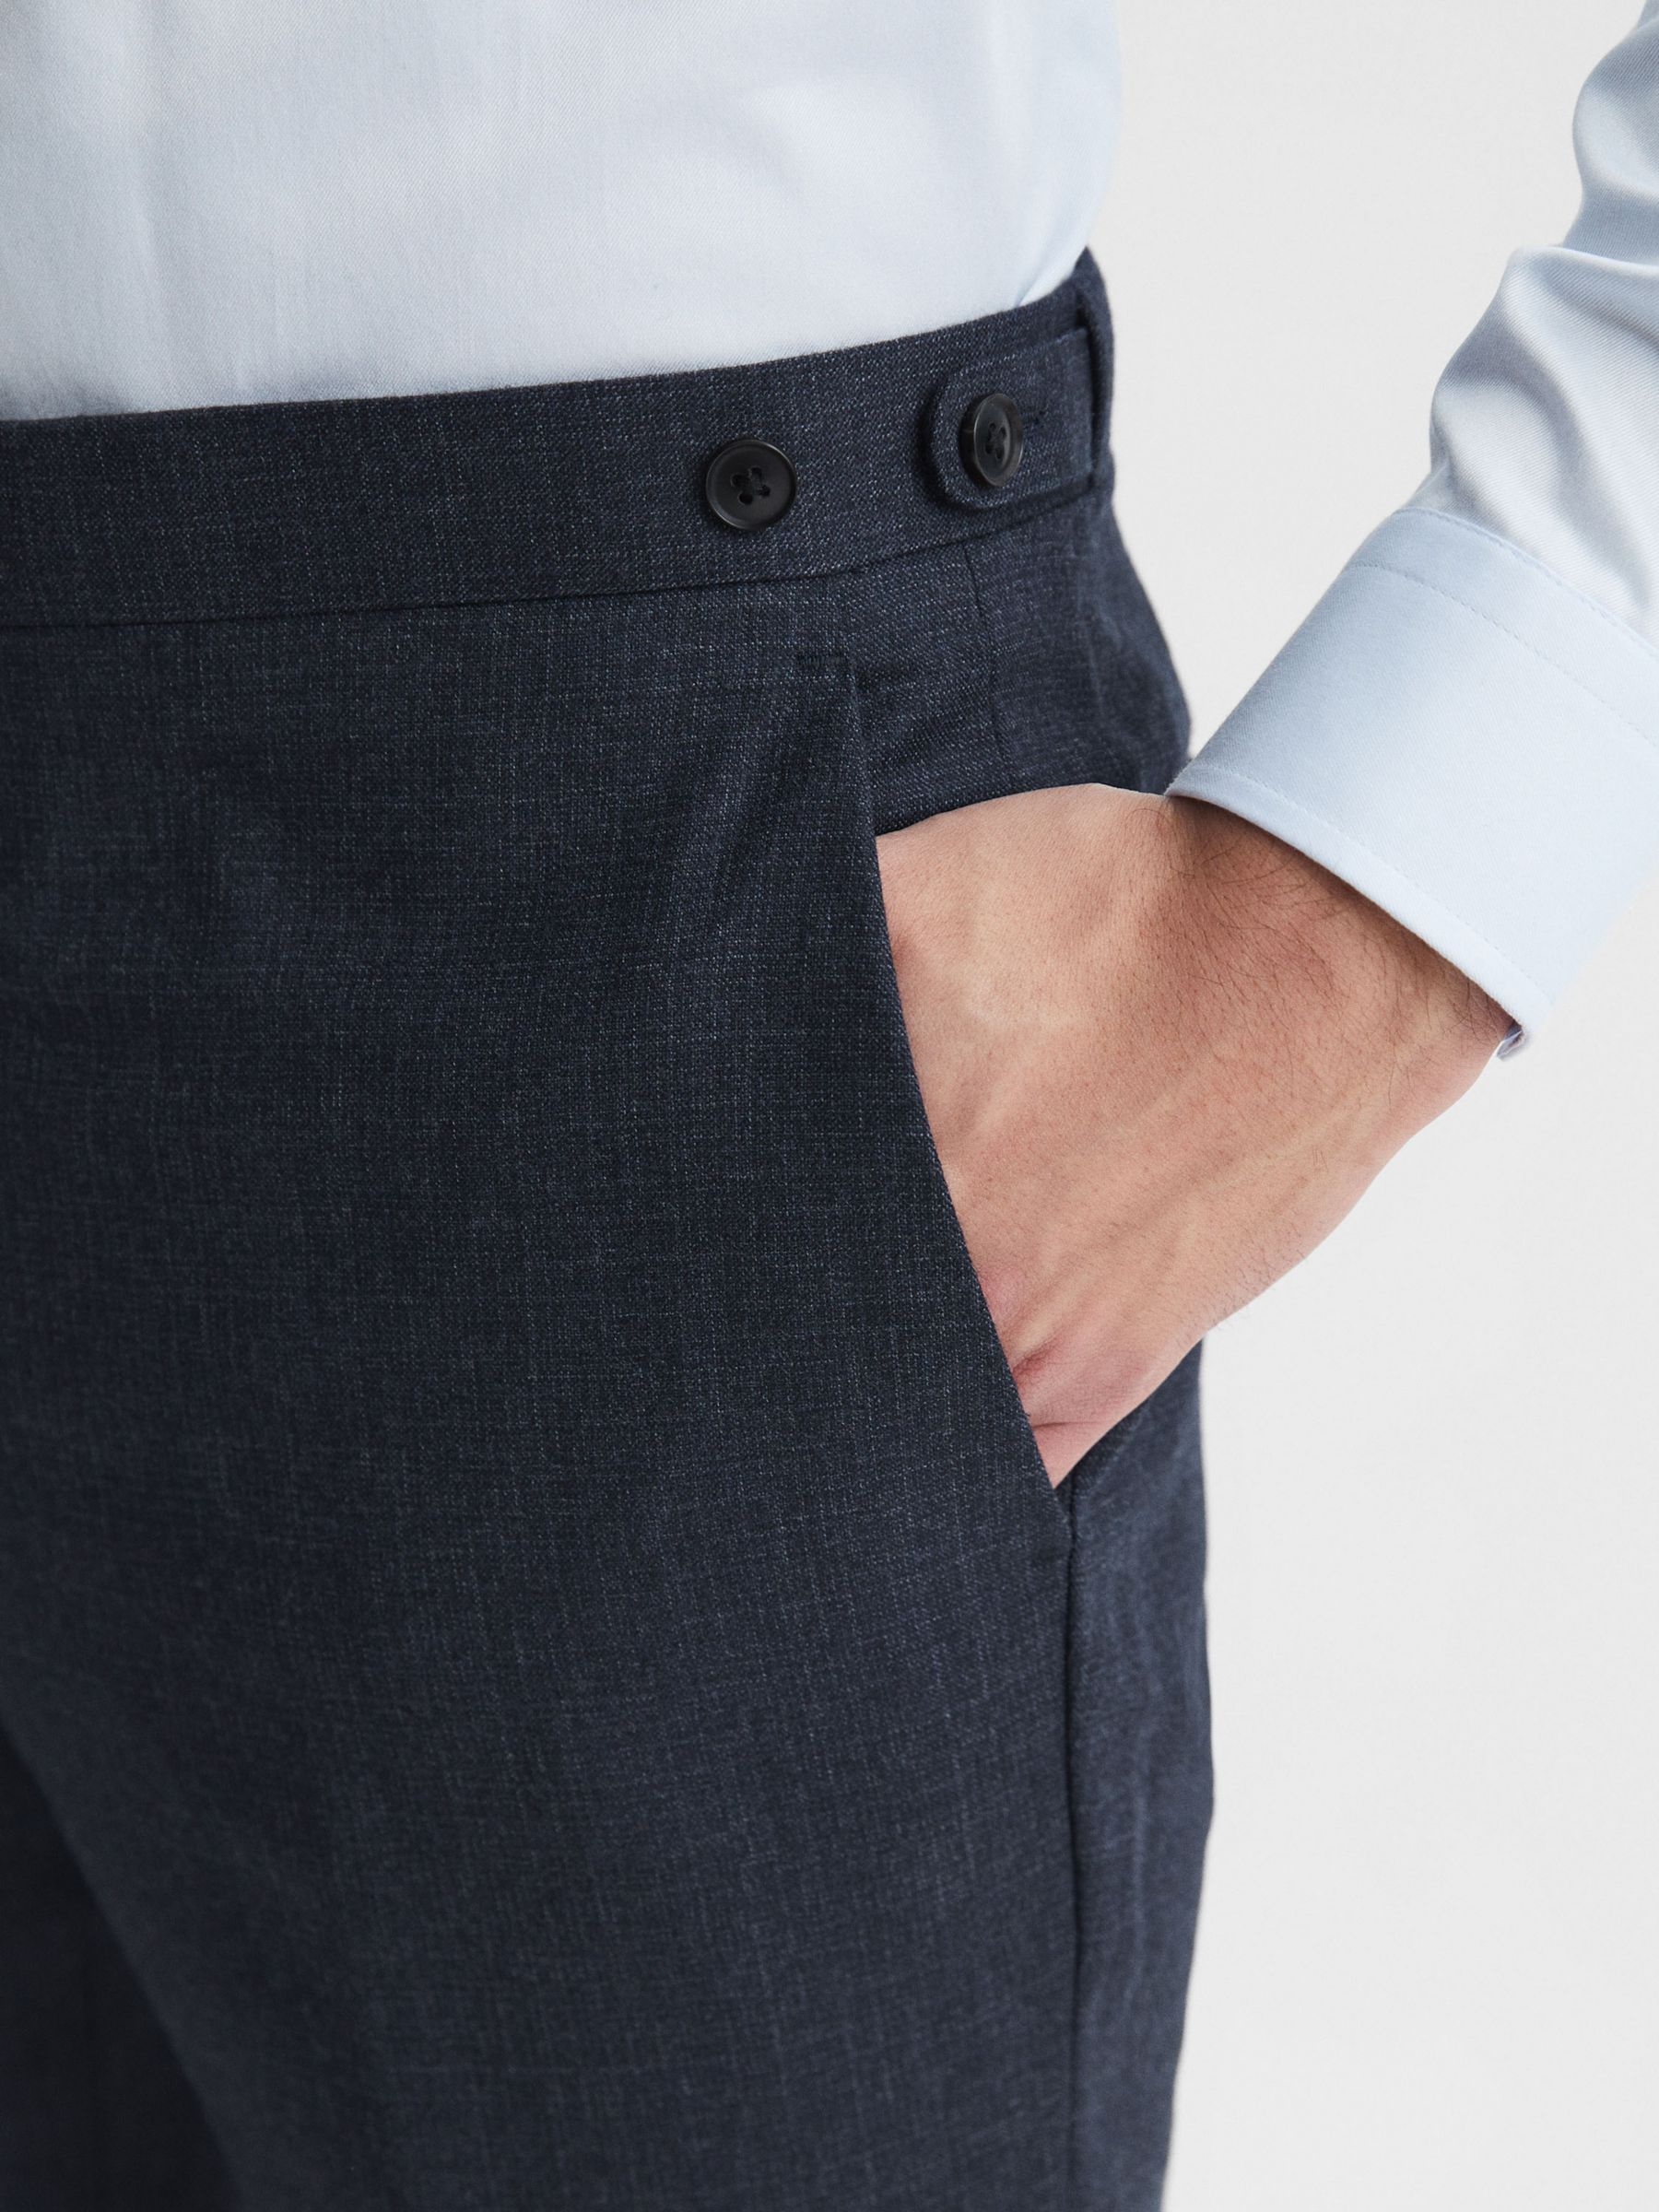 Reiss Dunn Cross Fleck Textured Trousers, Navy, Navy, 28R